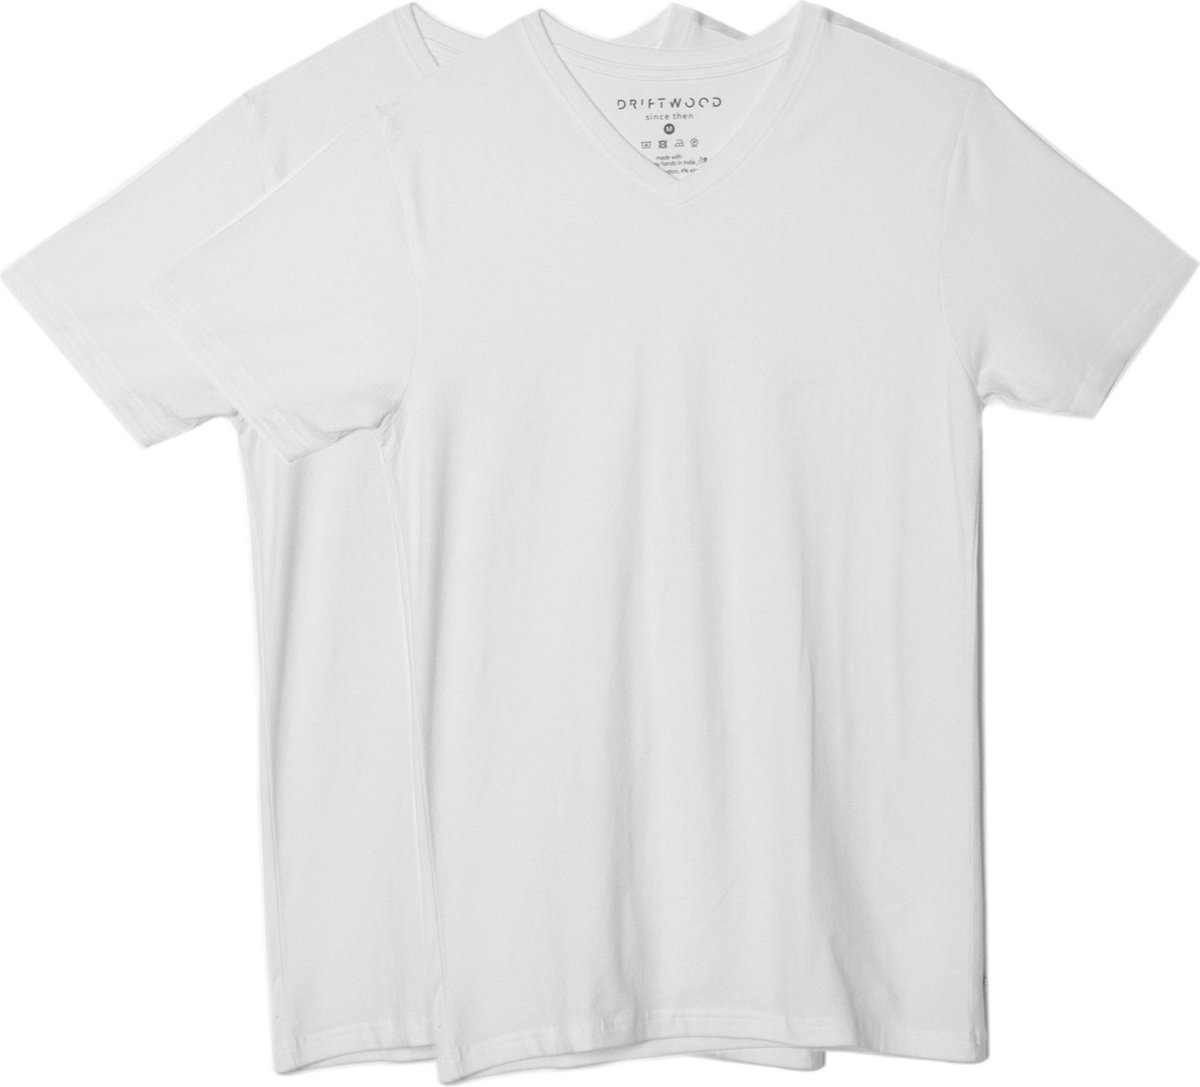 2 x T-shirt Basic - Biologisch katoen - wit - V - hals